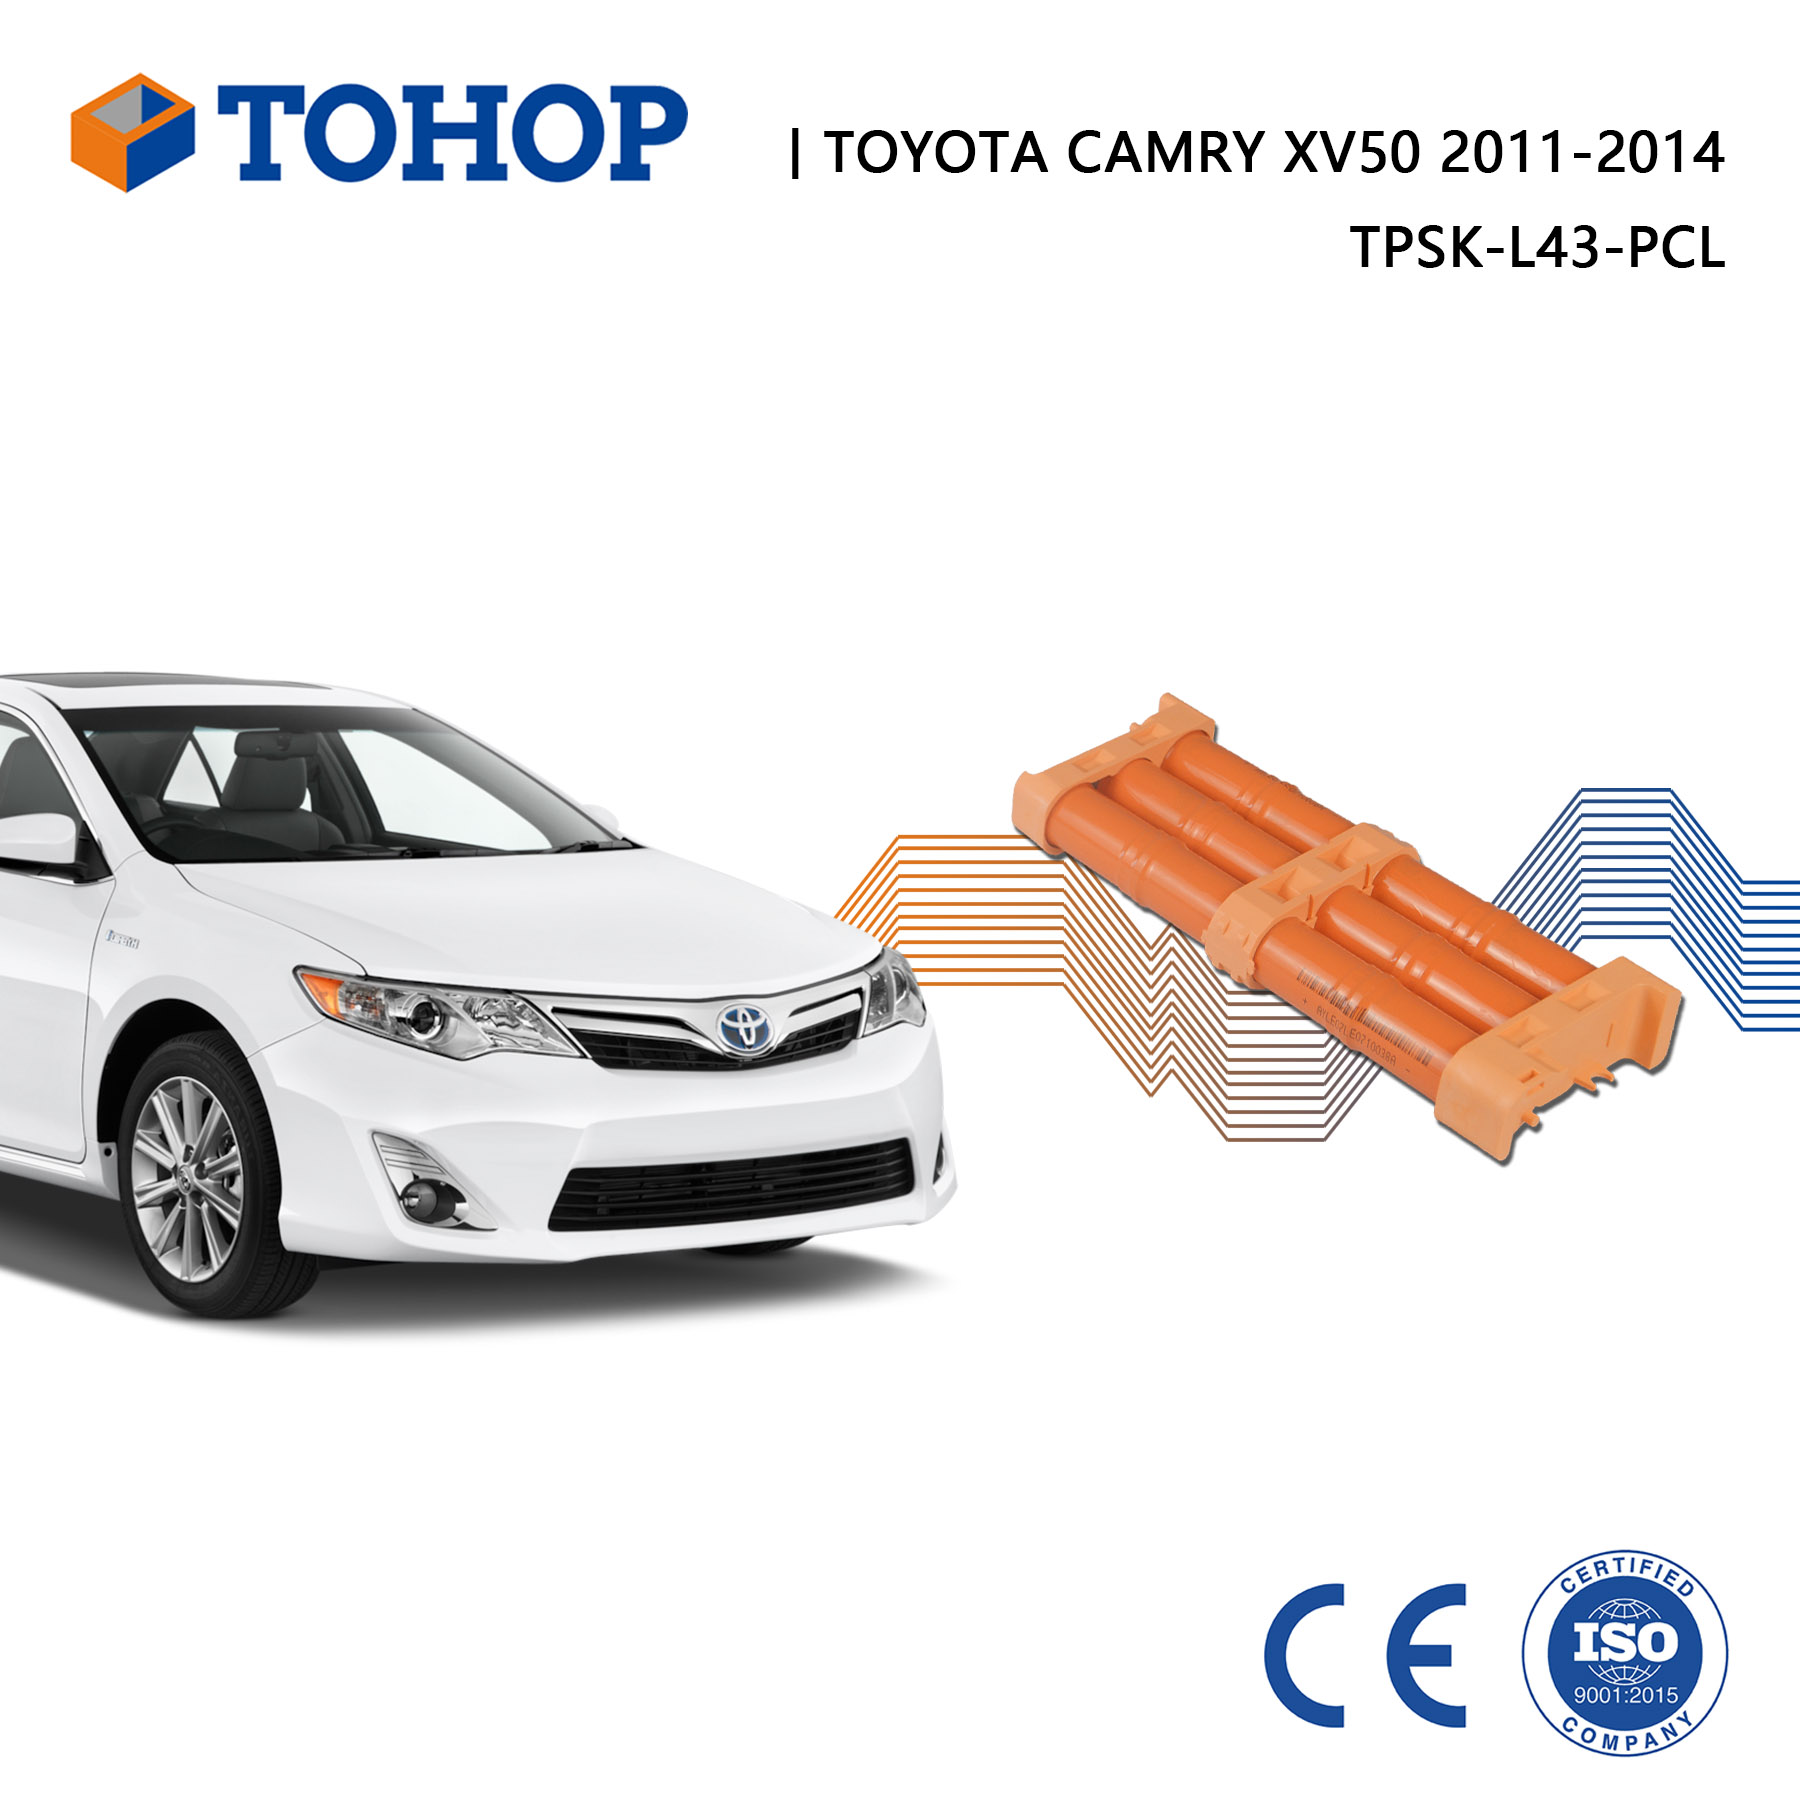 Remplacement de la batterie hybride Toyota Camry XV40/XV50 2007-2016